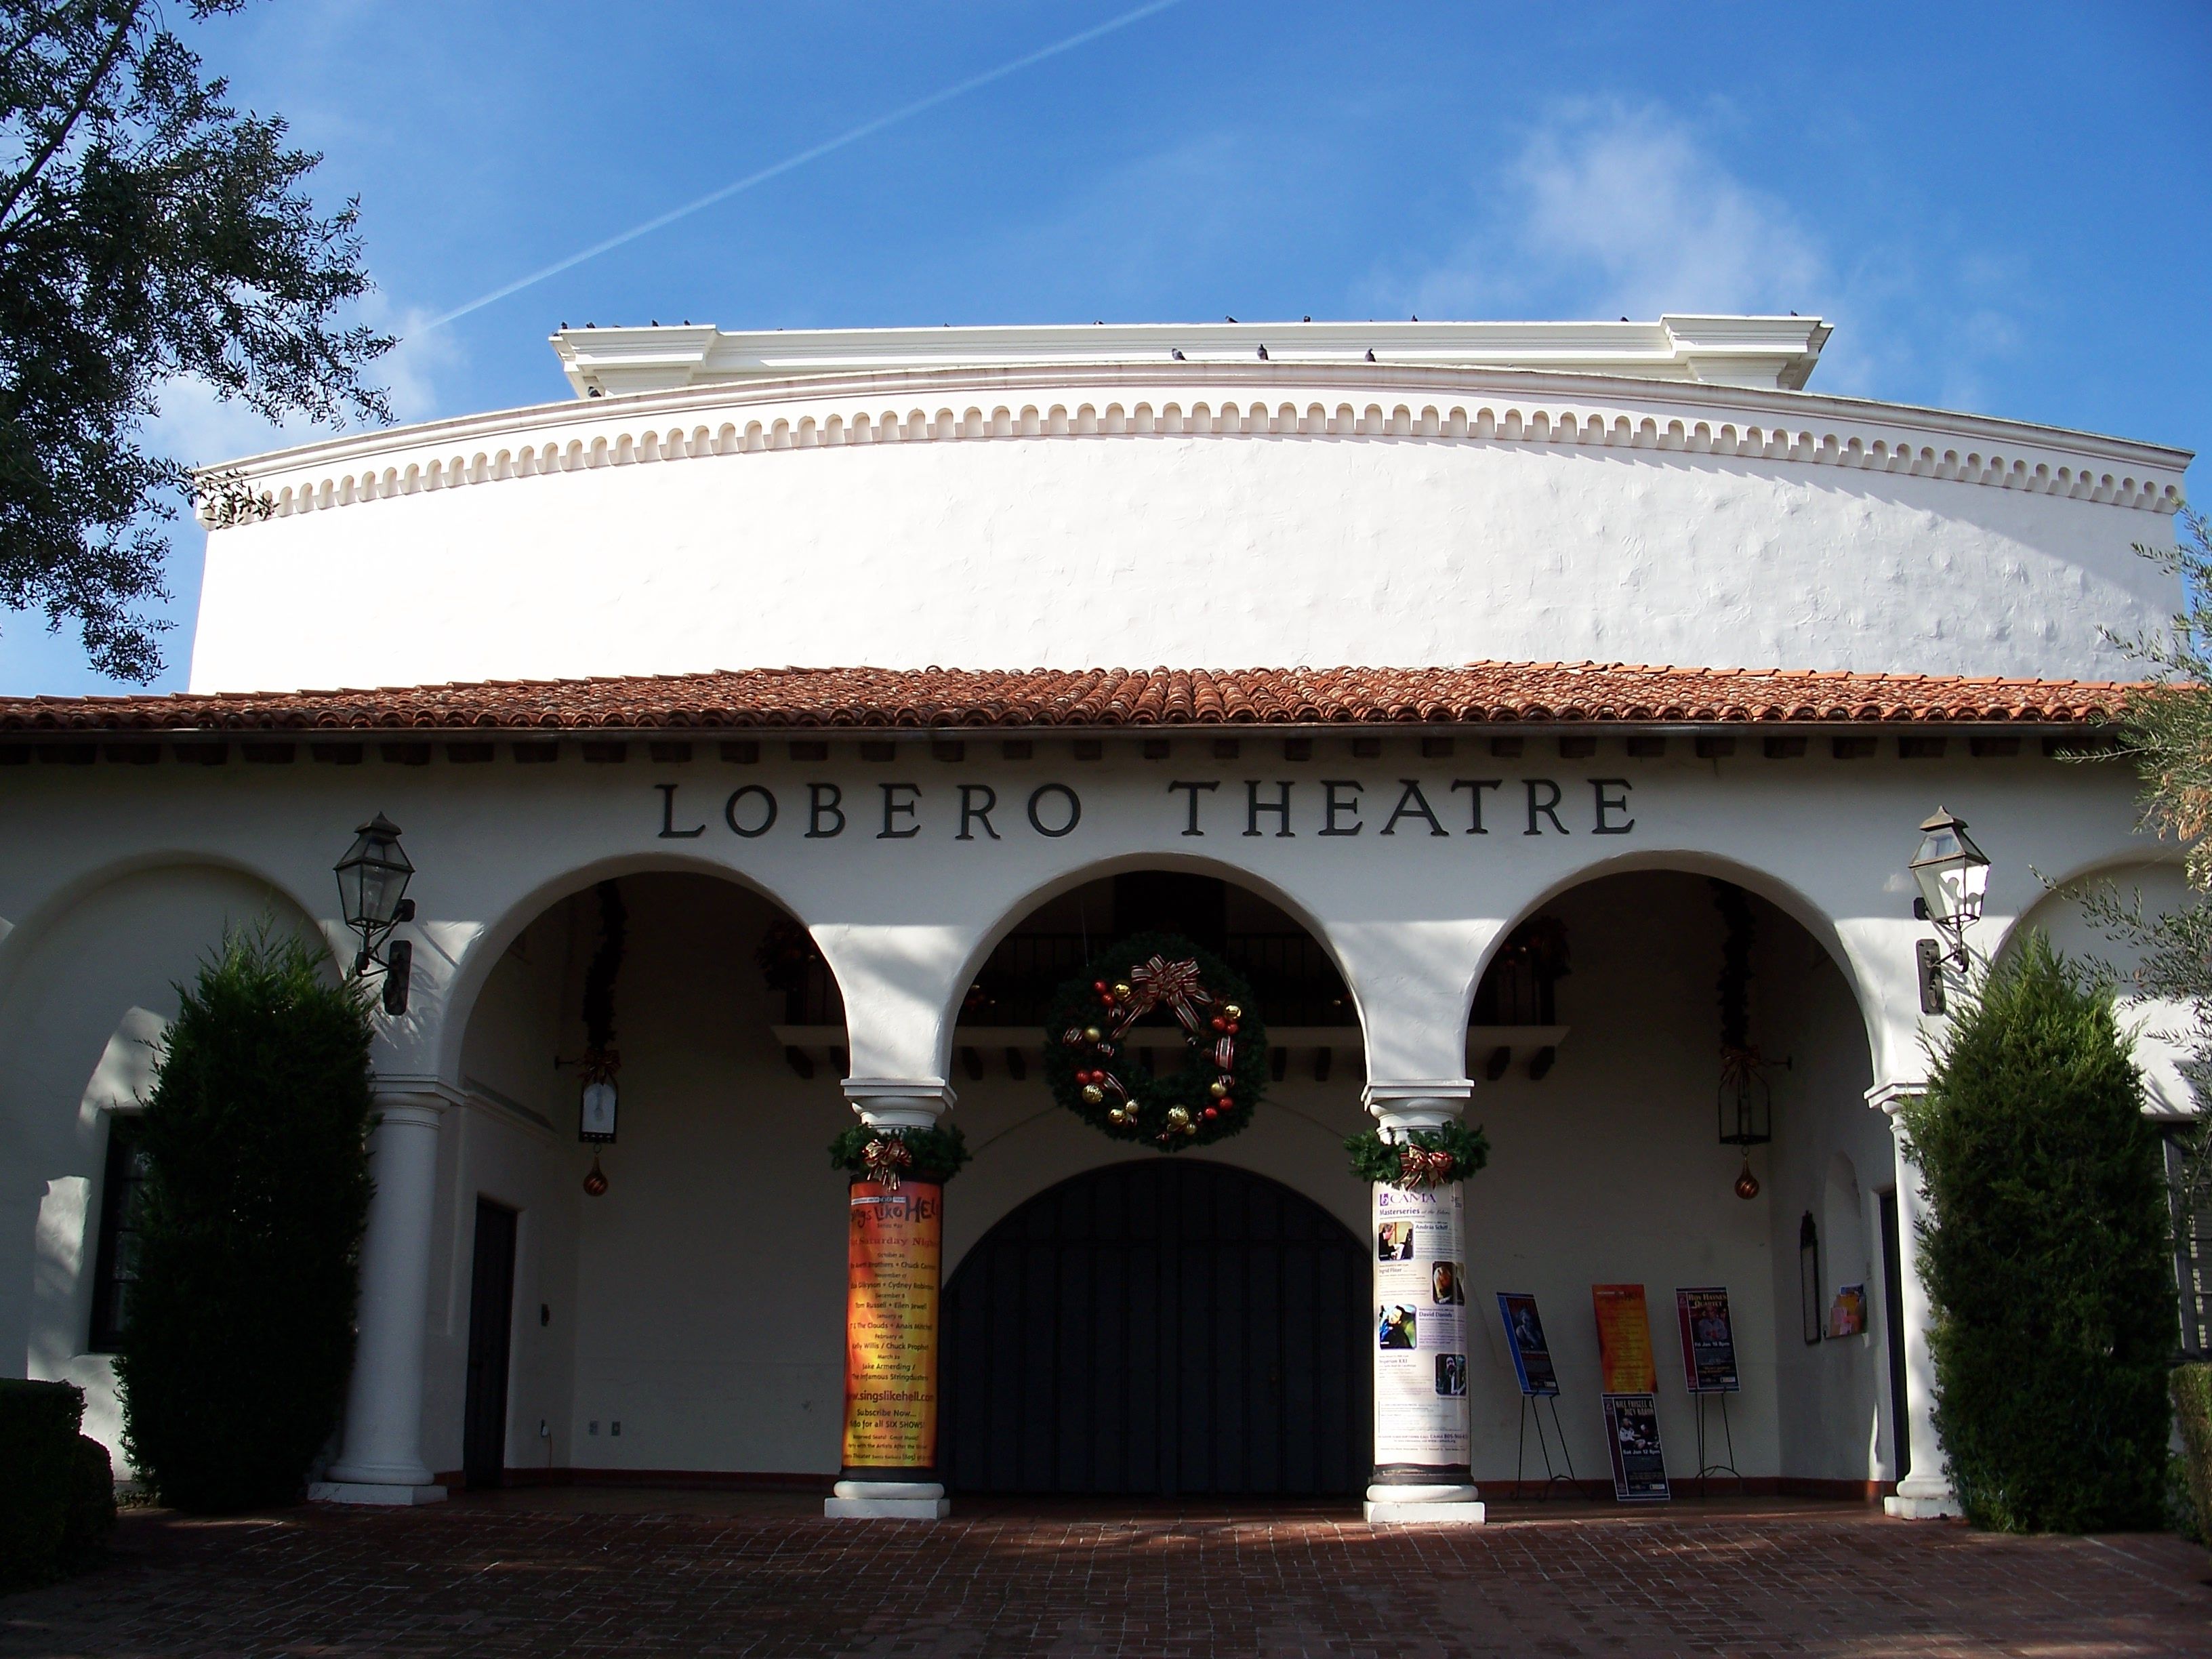 Santa Barbara's Lobero Theater